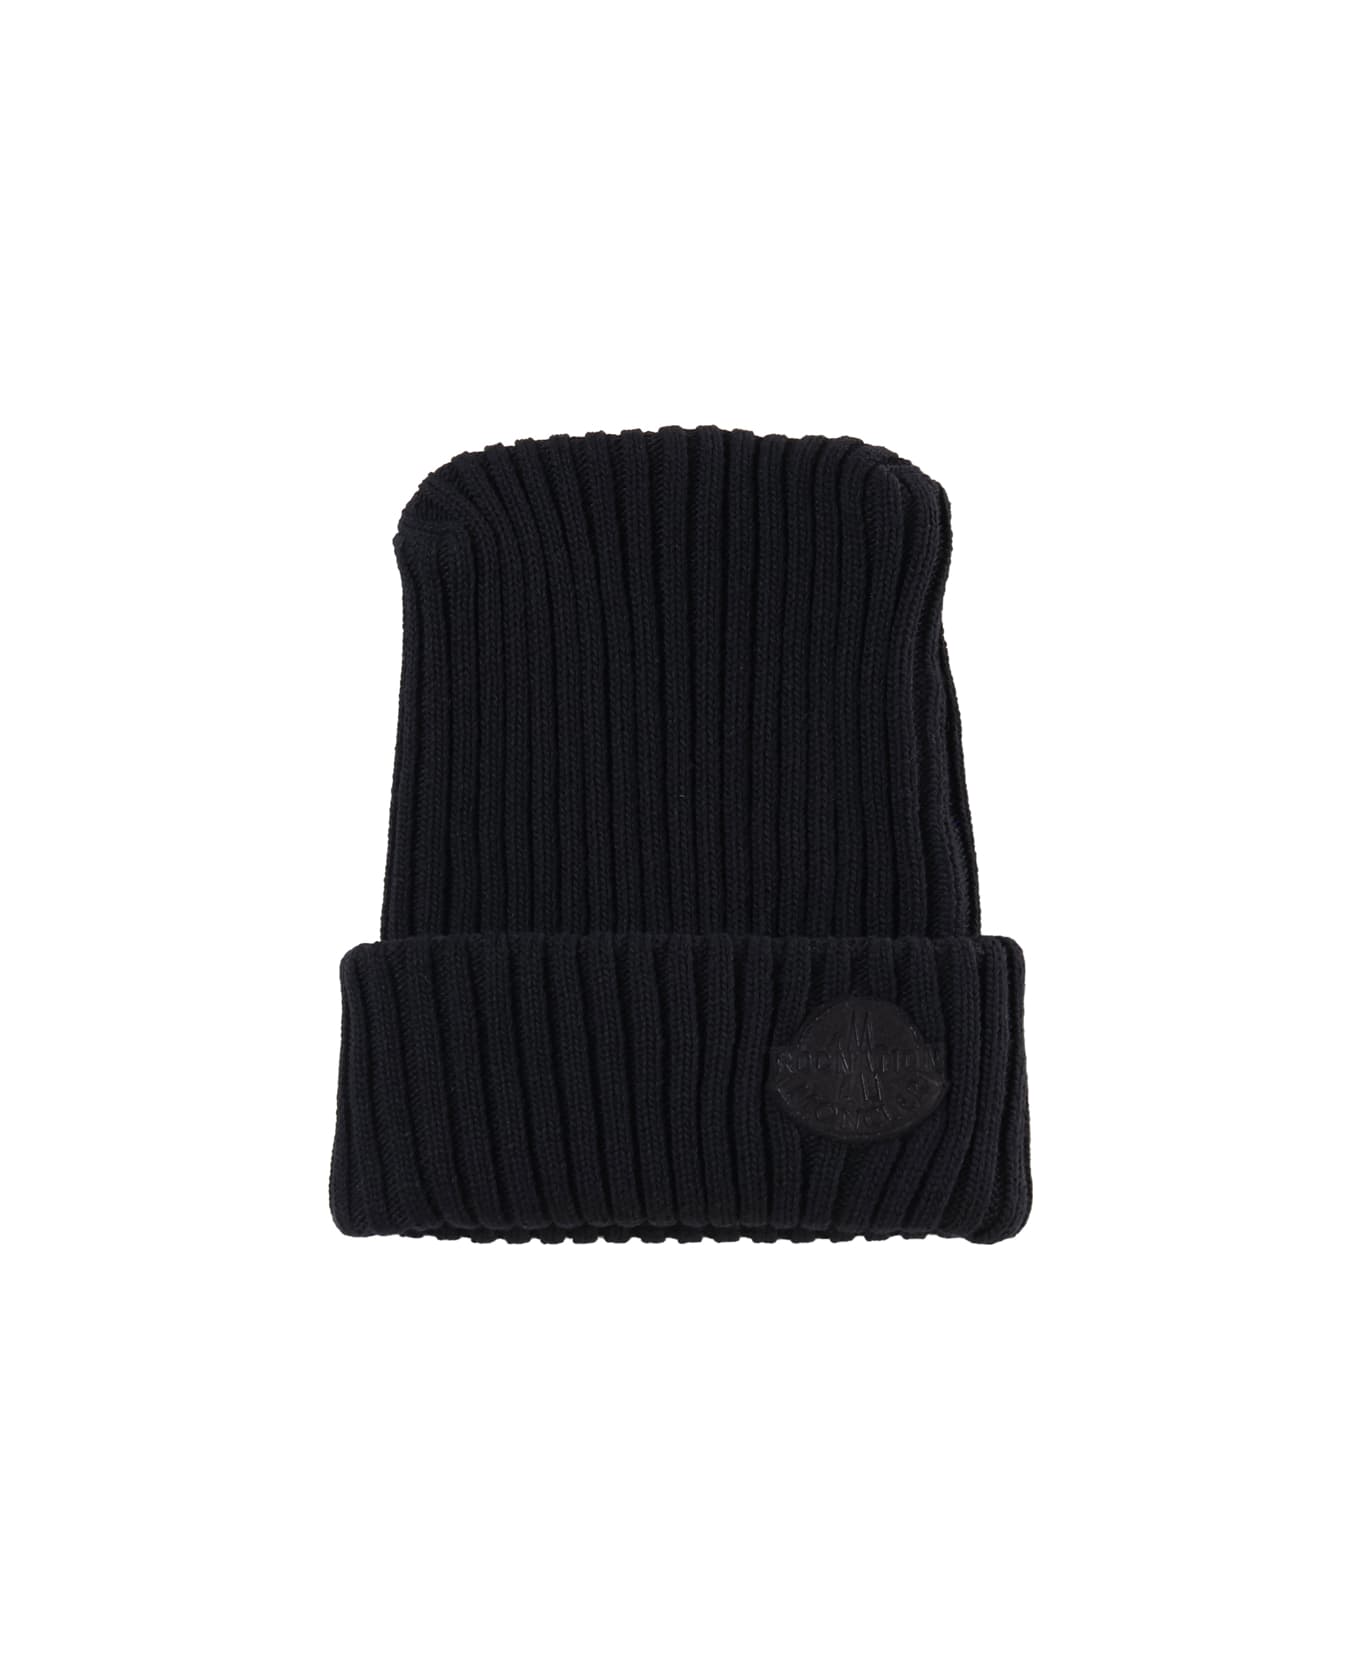 Moncler Genius Wool Cap - Black 帽子